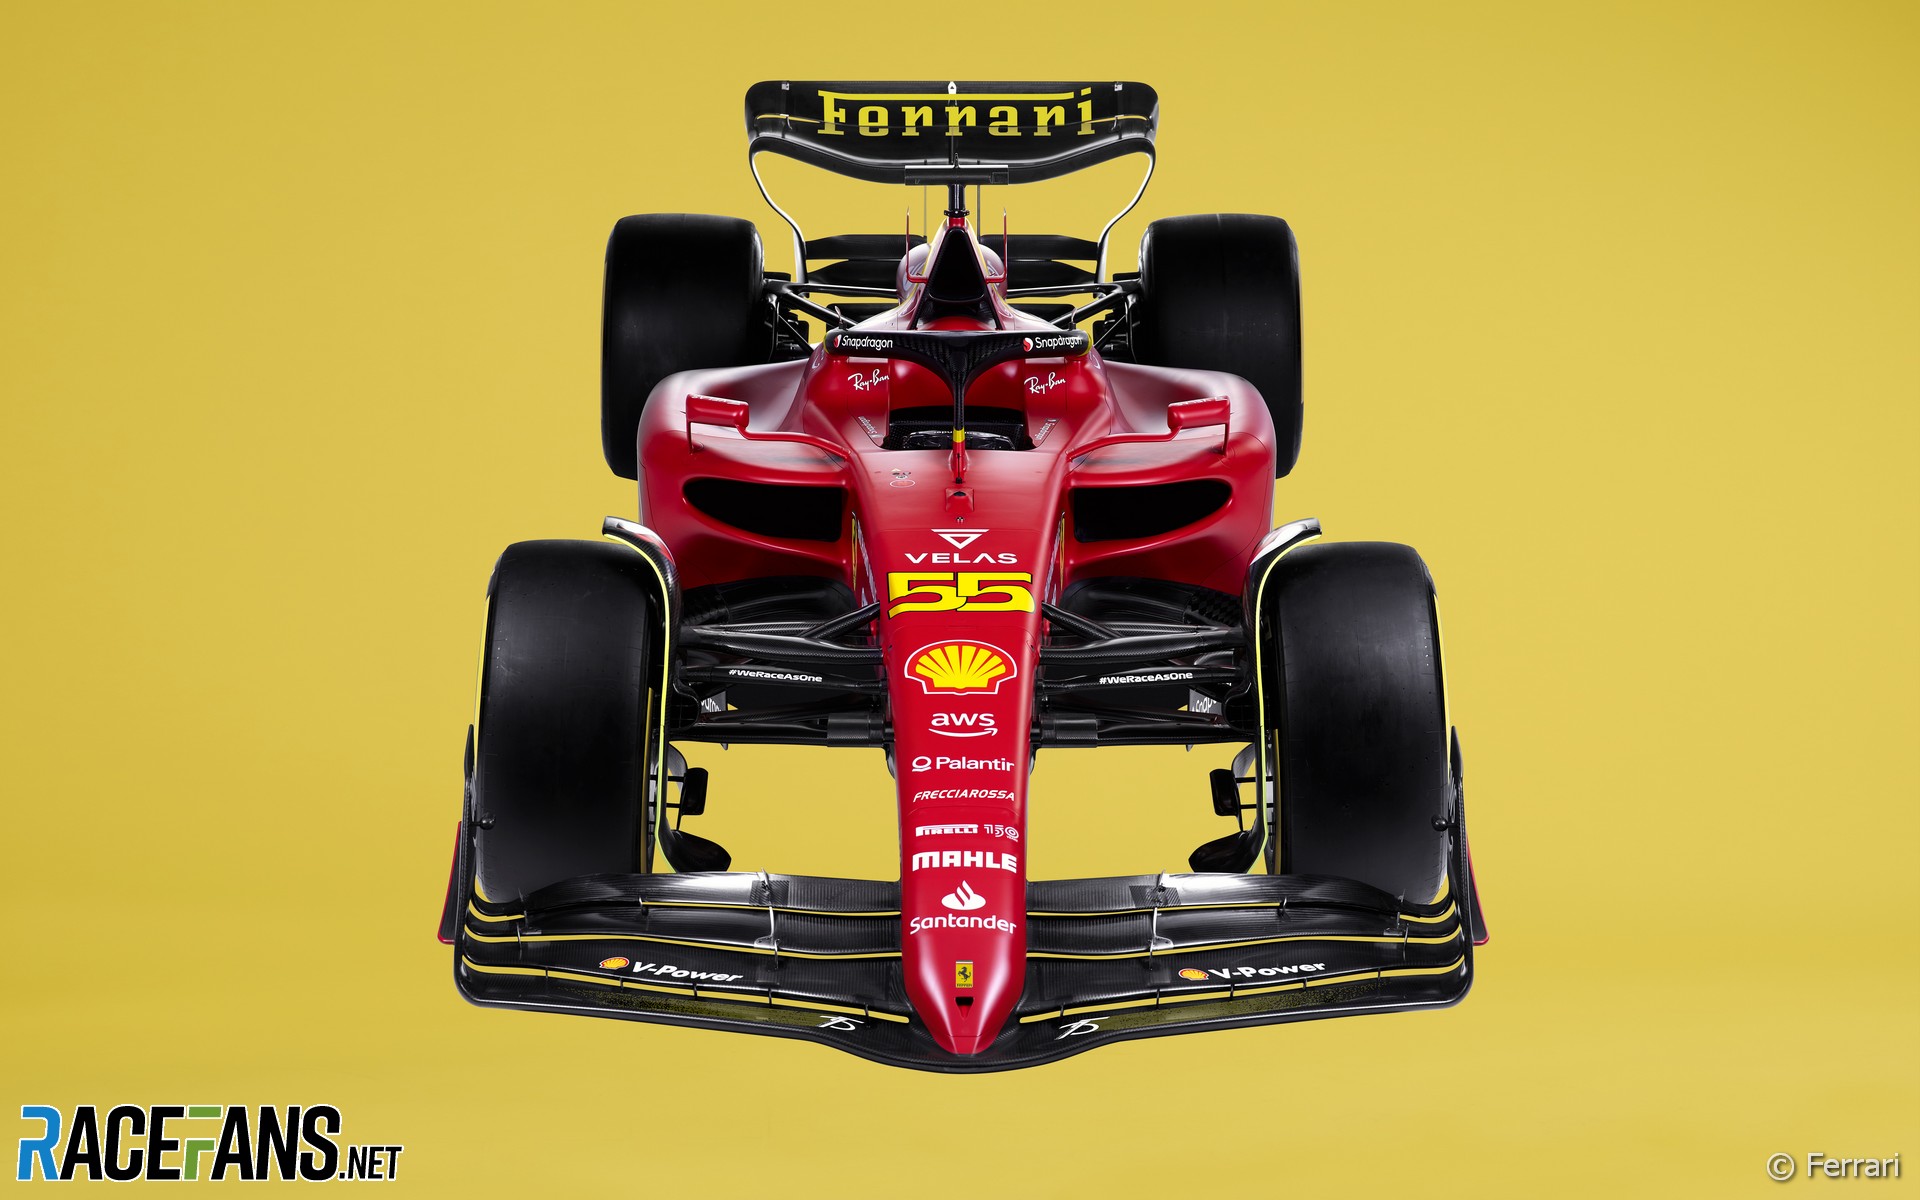 Ferrari's yellow livery for Monza 100th anniversary at 2022 Italian Grand Prix